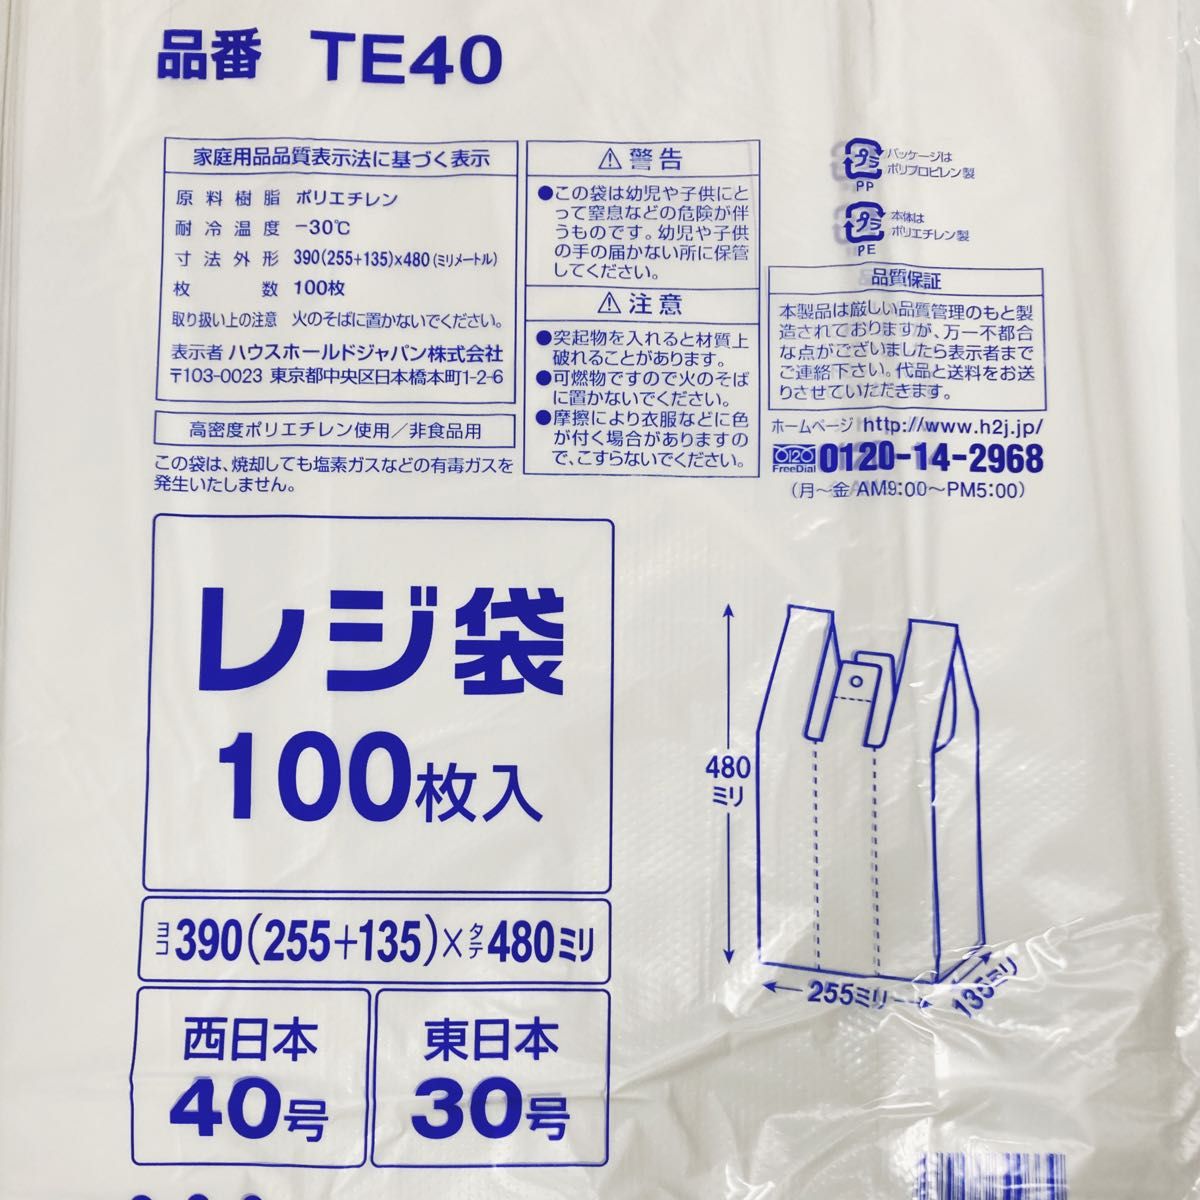 レジ袋 L 200枚 乳白色 無地 エコバッグ 手提げ袋 買い物袋 スーパーの袋 ビニール袋 ポリ袋 ゴミ袋 TE40